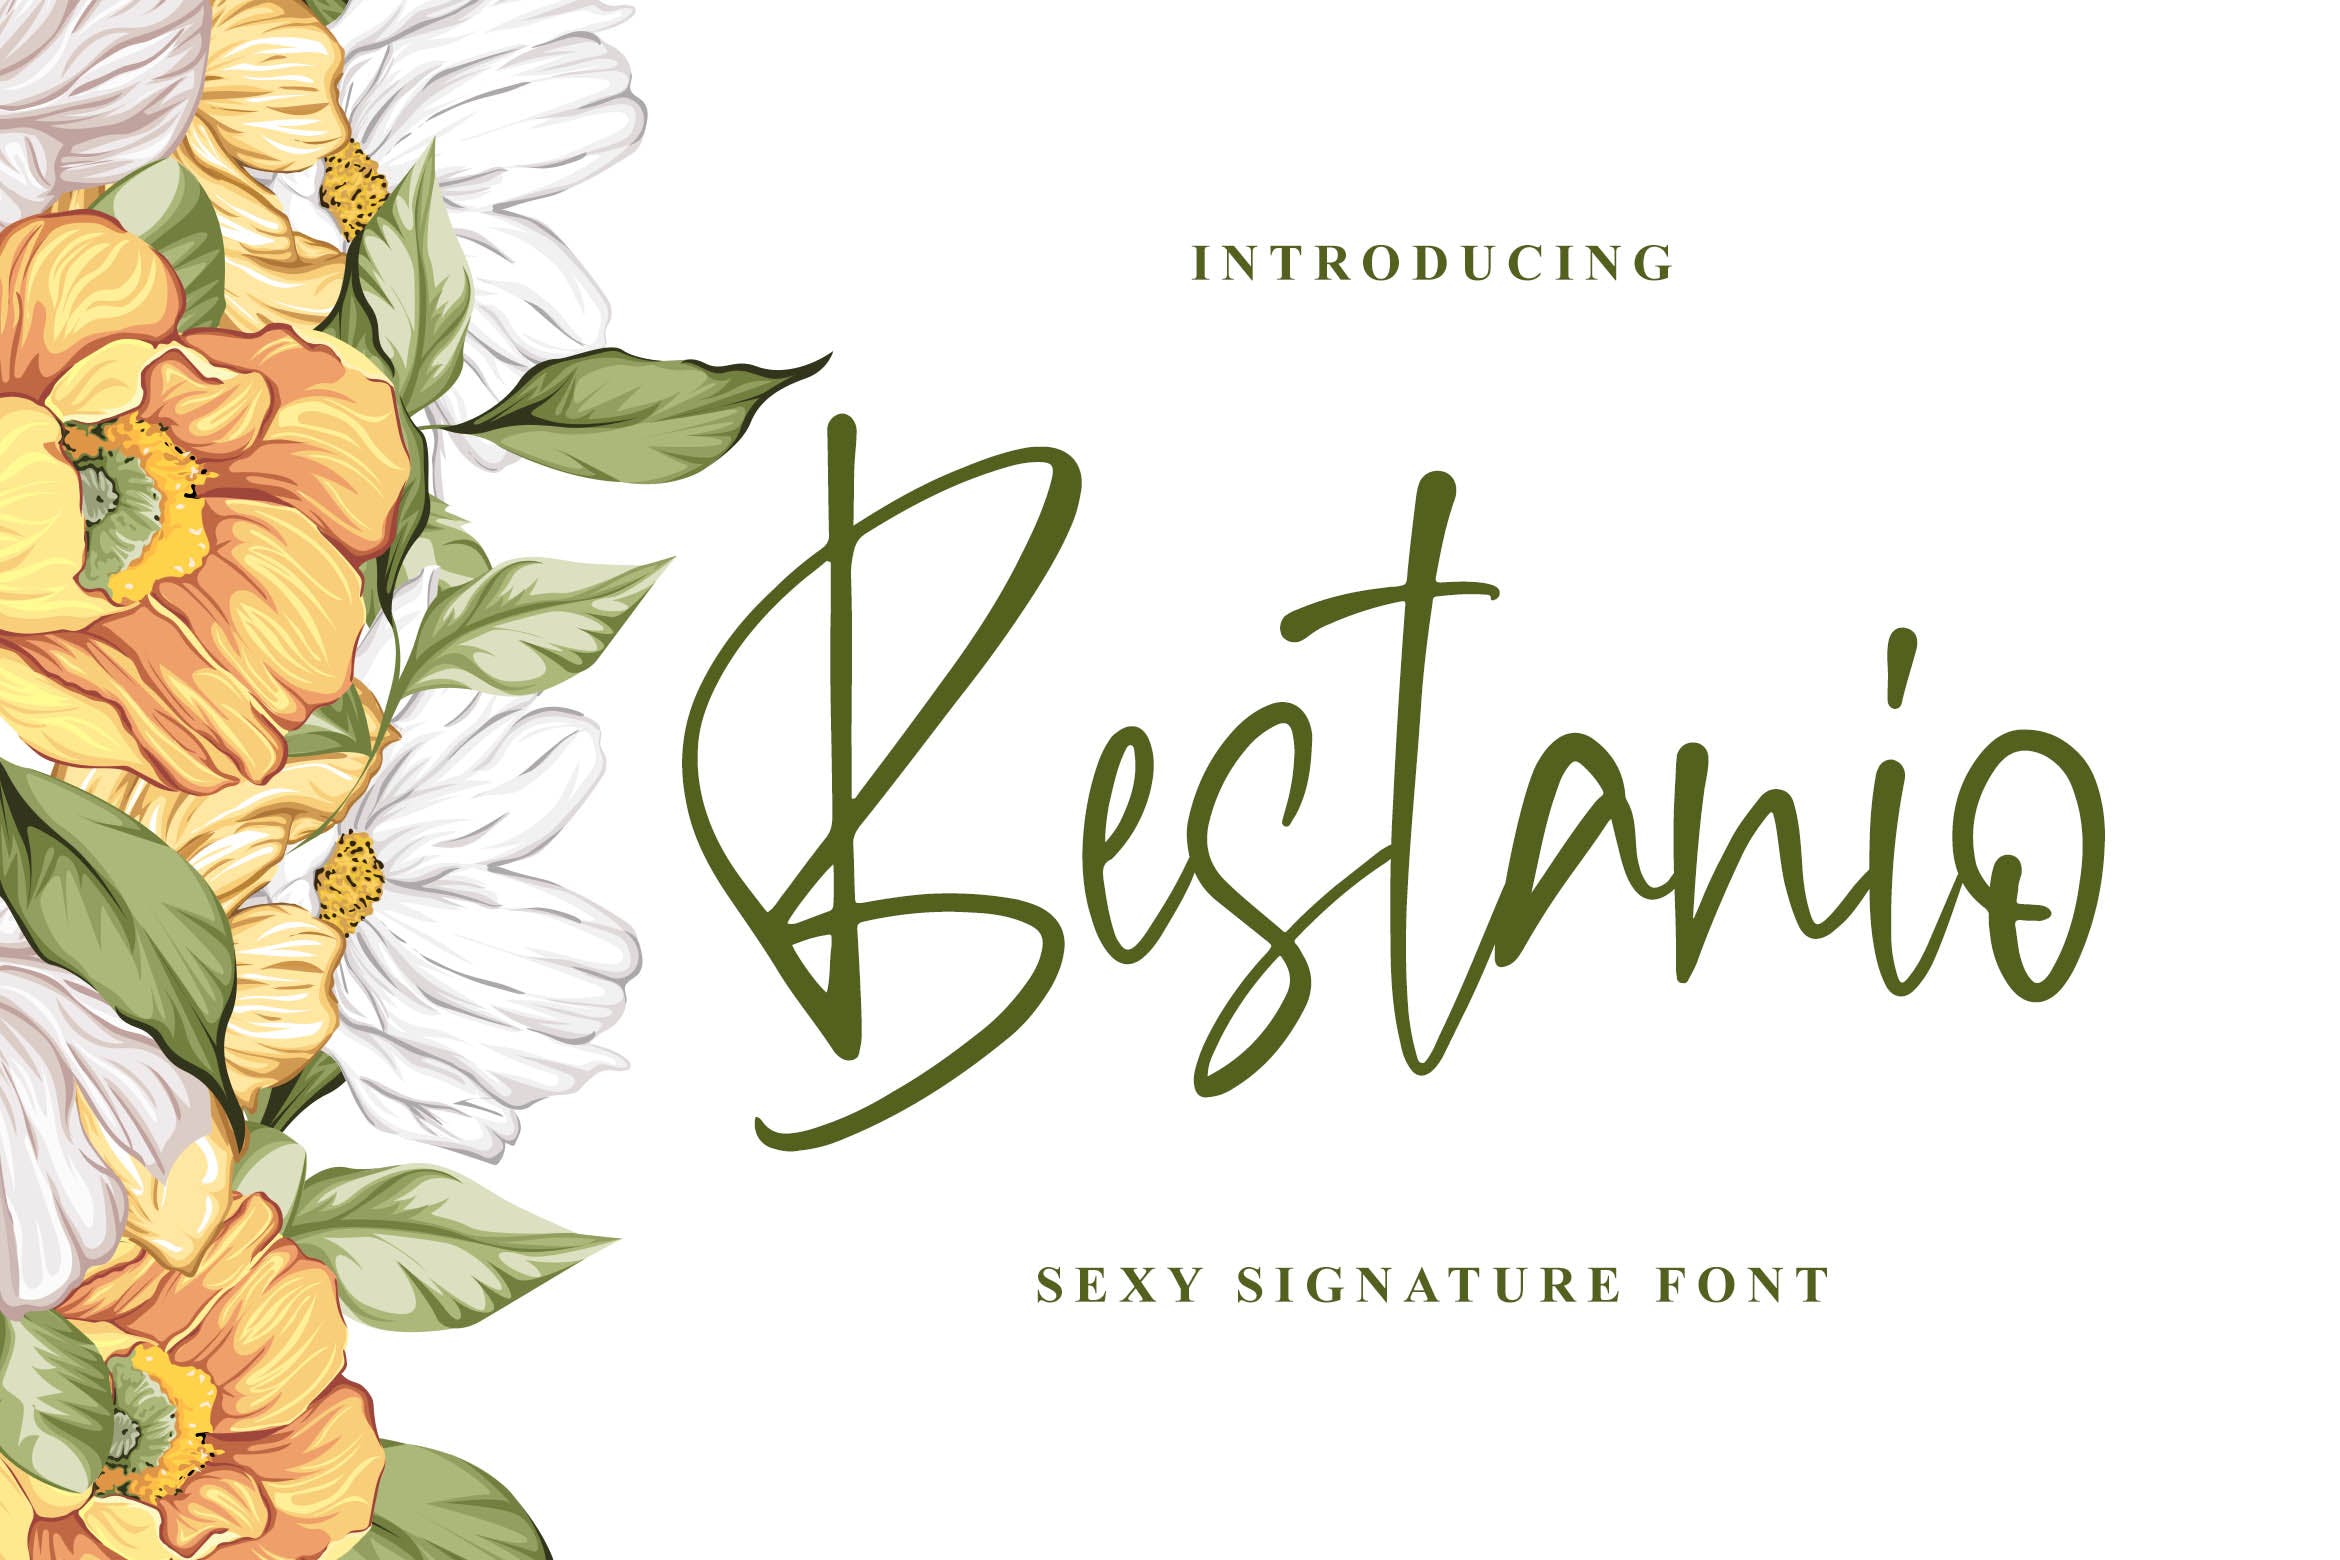 性感时尚英文签名字体16设计素材网精选 Bestanio – Sexy Signature Font插图